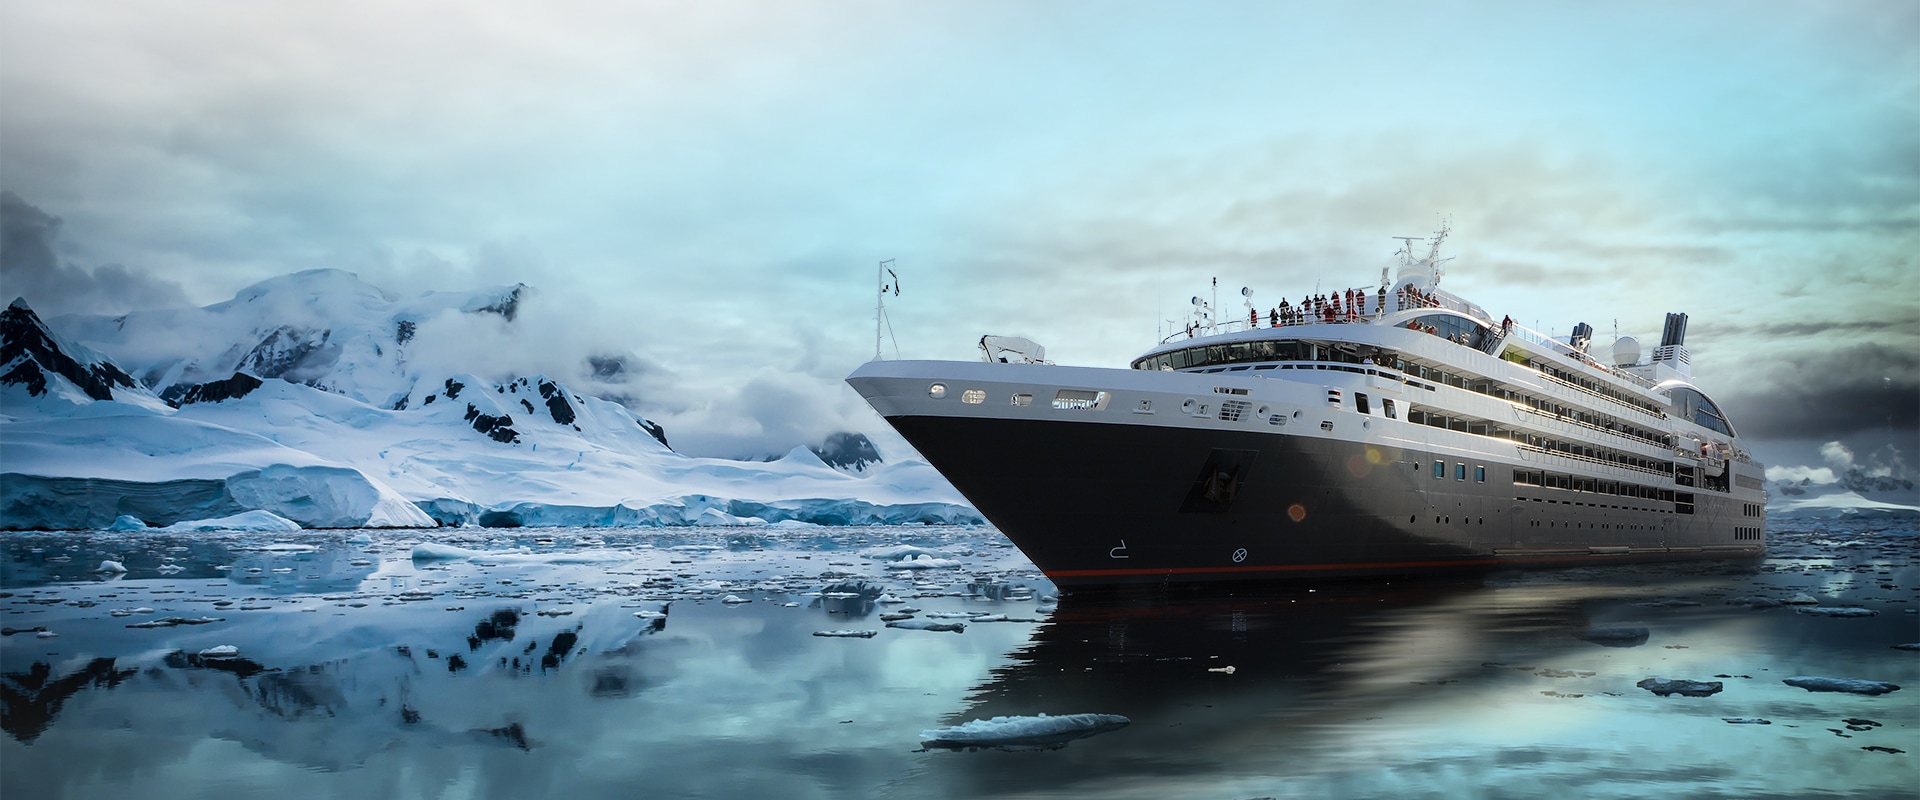 Luxury small ship Le Boreal cruising antarctica